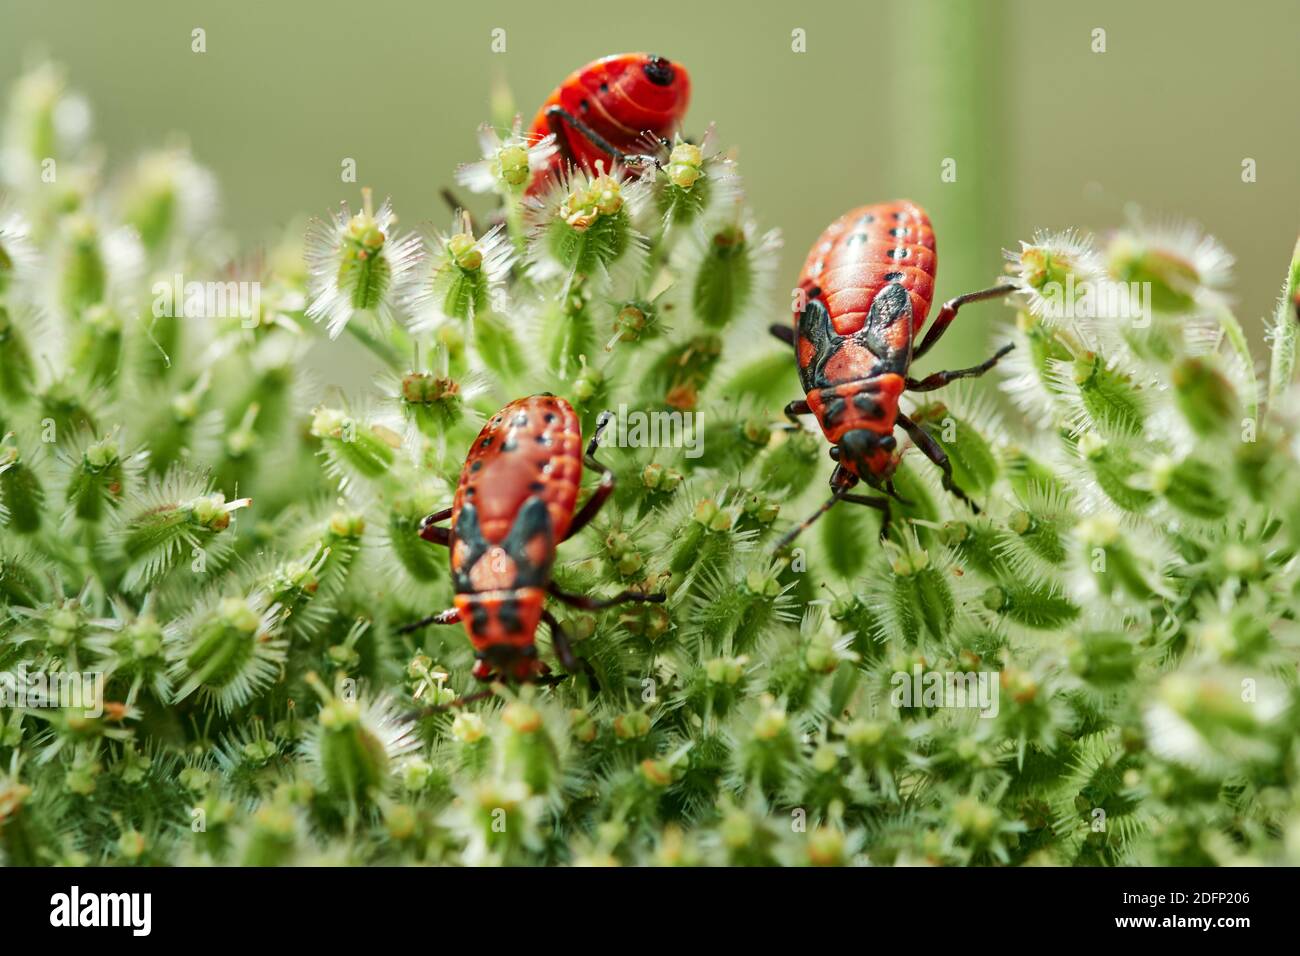 Primer plano de tres insectos rojos con marcas negras (Spilostethus saxatilis) arrastrándose sobre flores verdes umbellifer Foto de stock